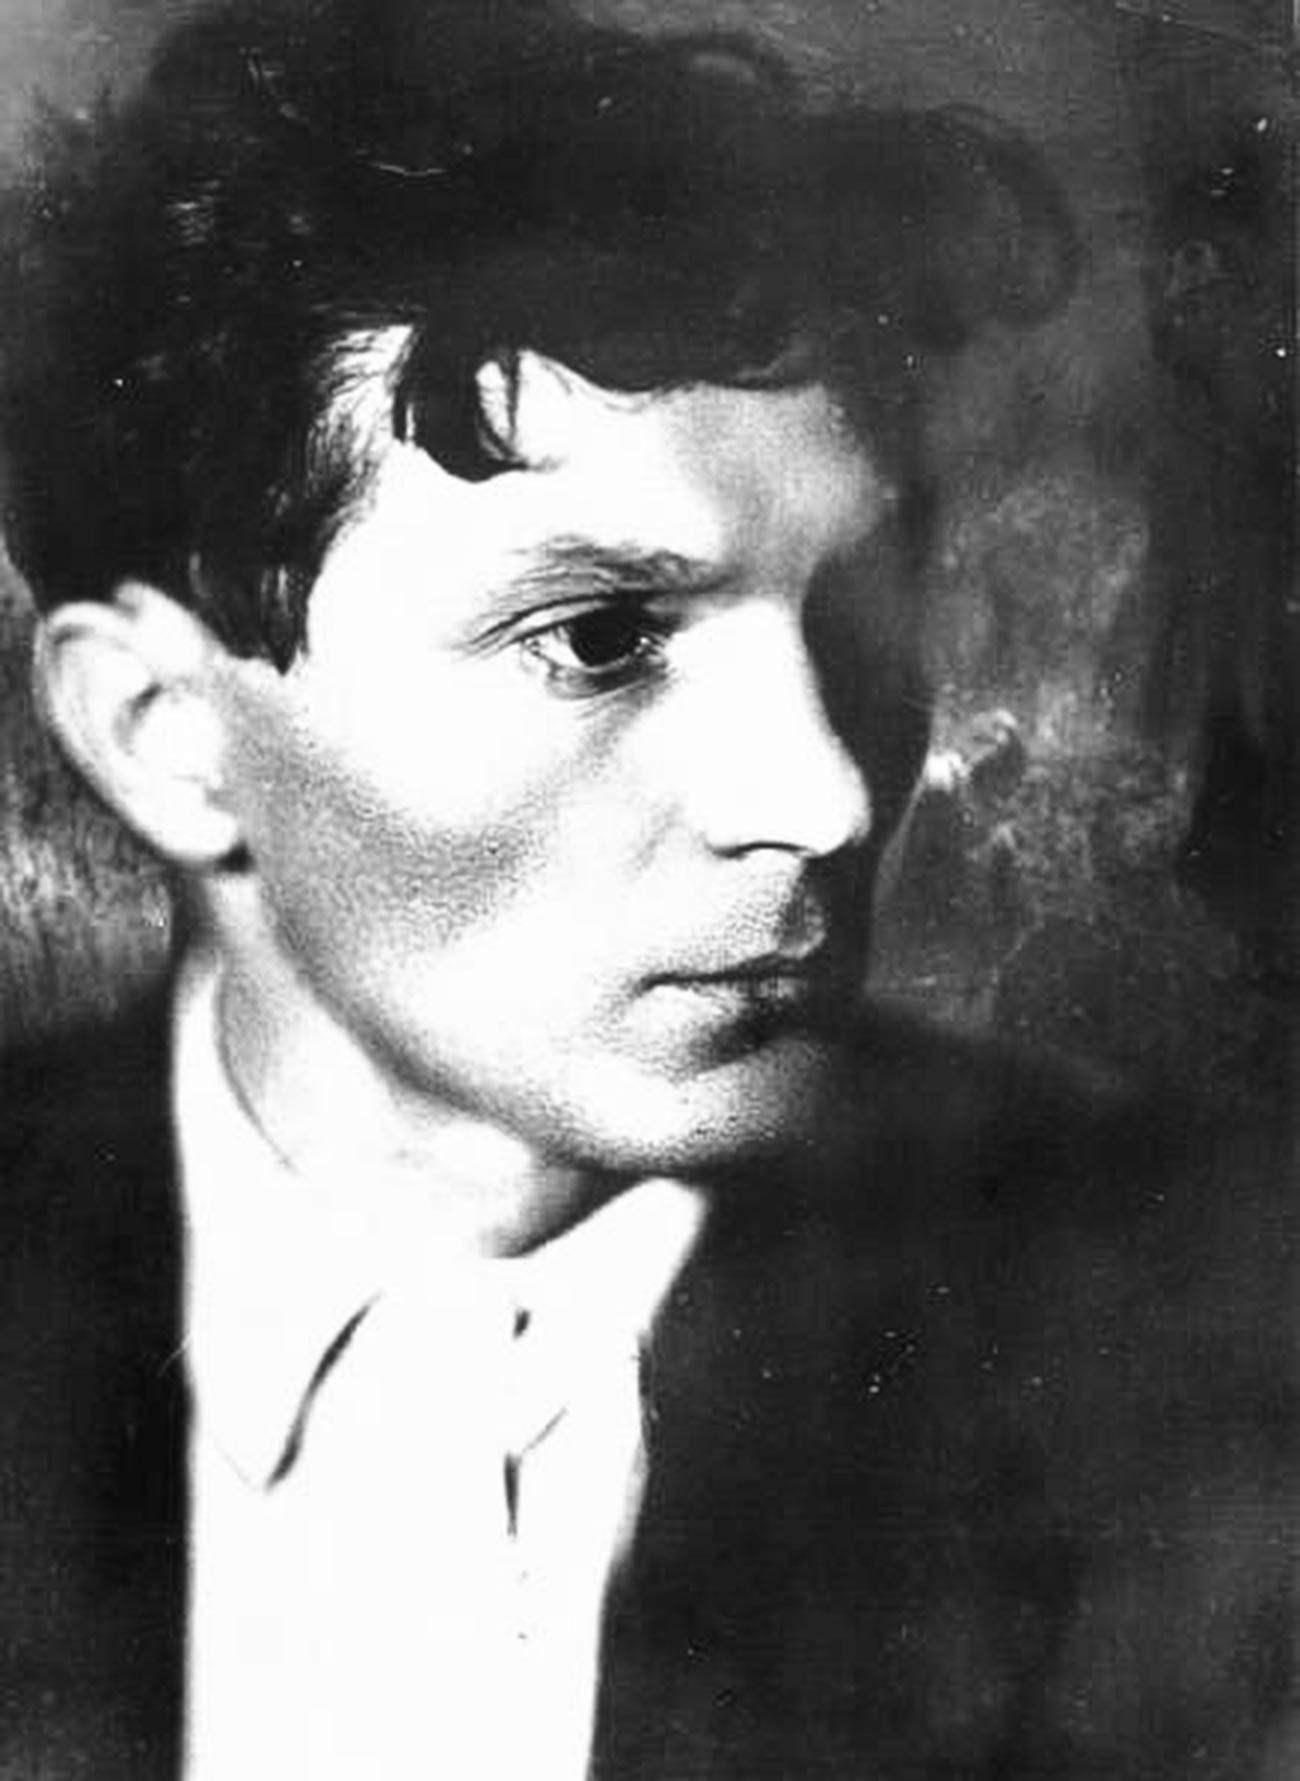 El director de cine Vsevolod Pudovkin, 1925

